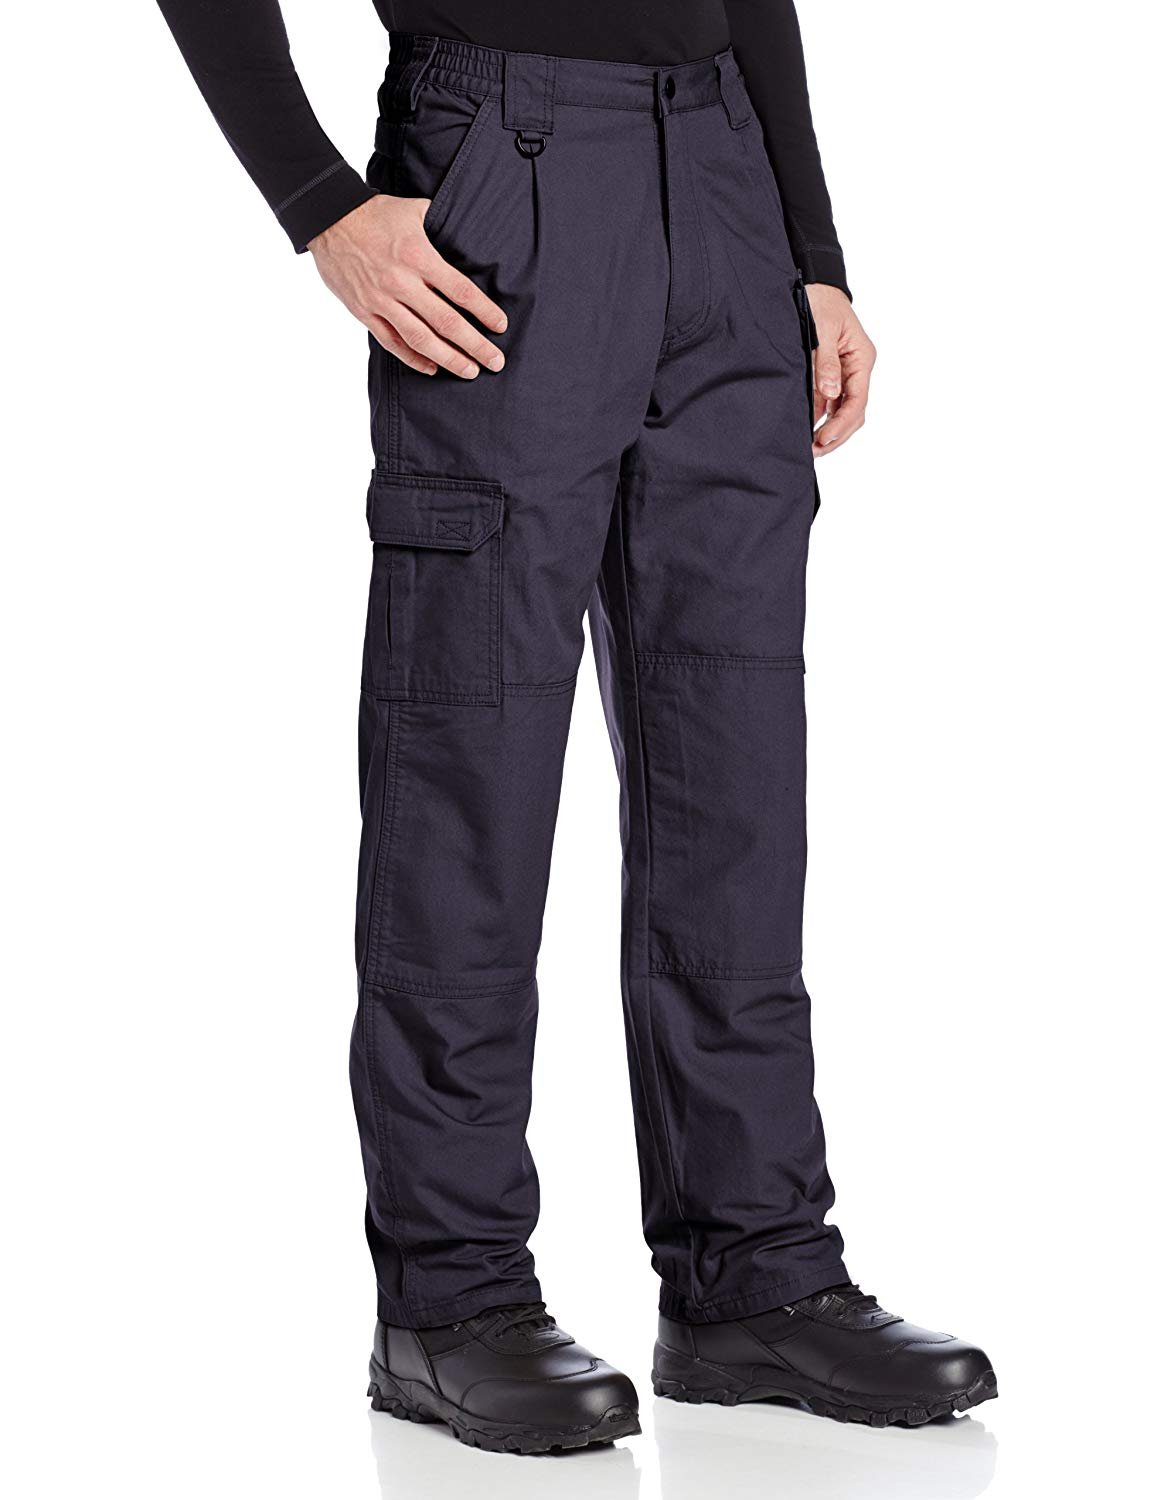 5.11 Work Gear Men's Active Work Pants, Superior Fit, Double Reinforced,  100% Cotton, Khaki, 28W x 30L, Style 74251 